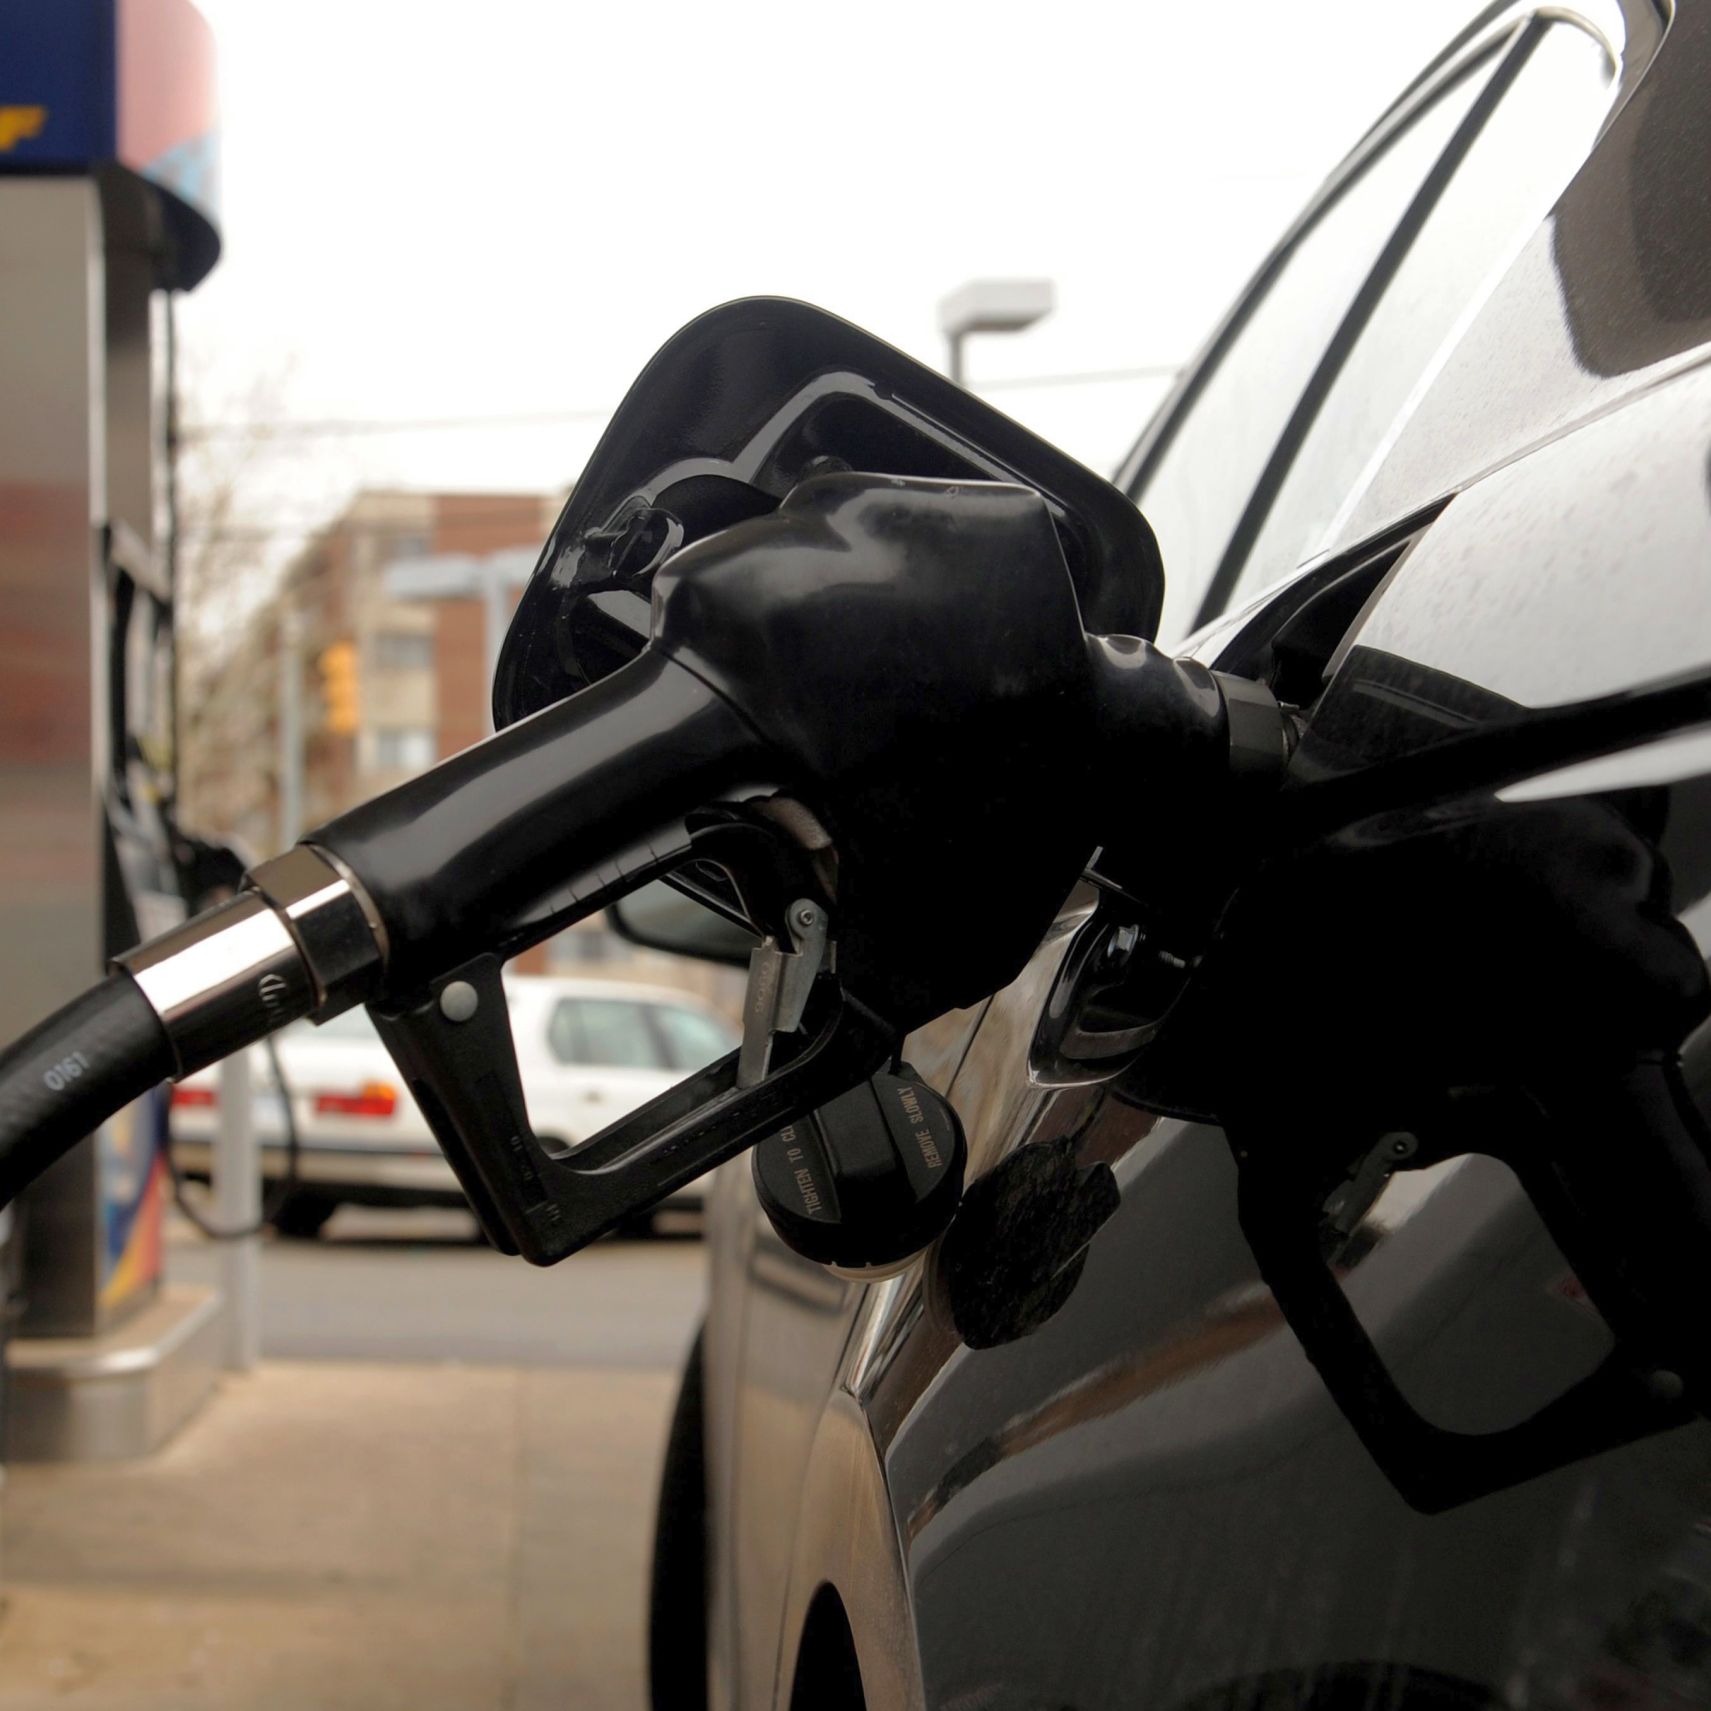 Най-много бензин за една средна работна заплата могат да закупят гражданите на Люксембург – 2300 литра на месец